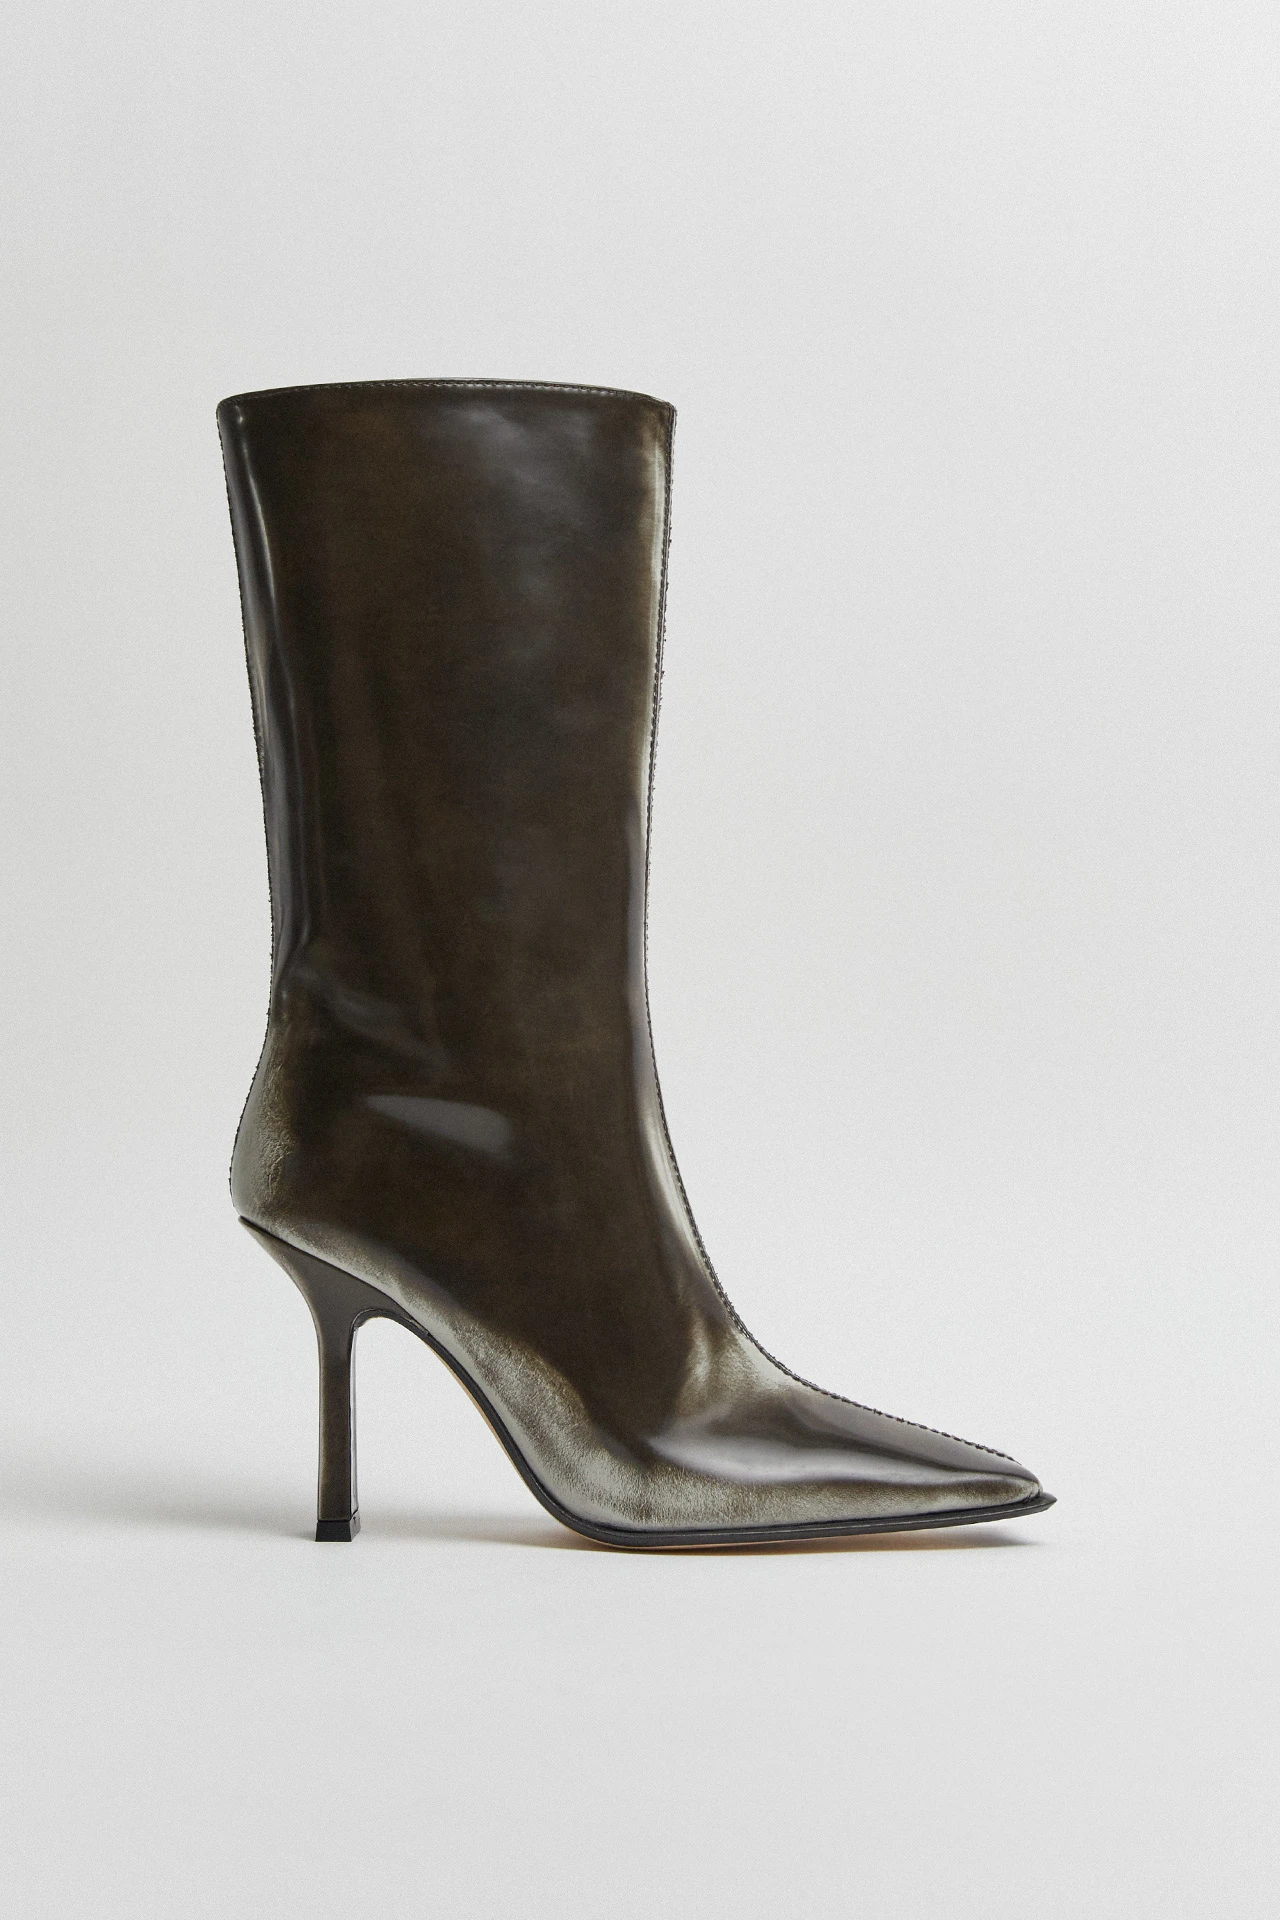 Miista-noor-grey-boots-01